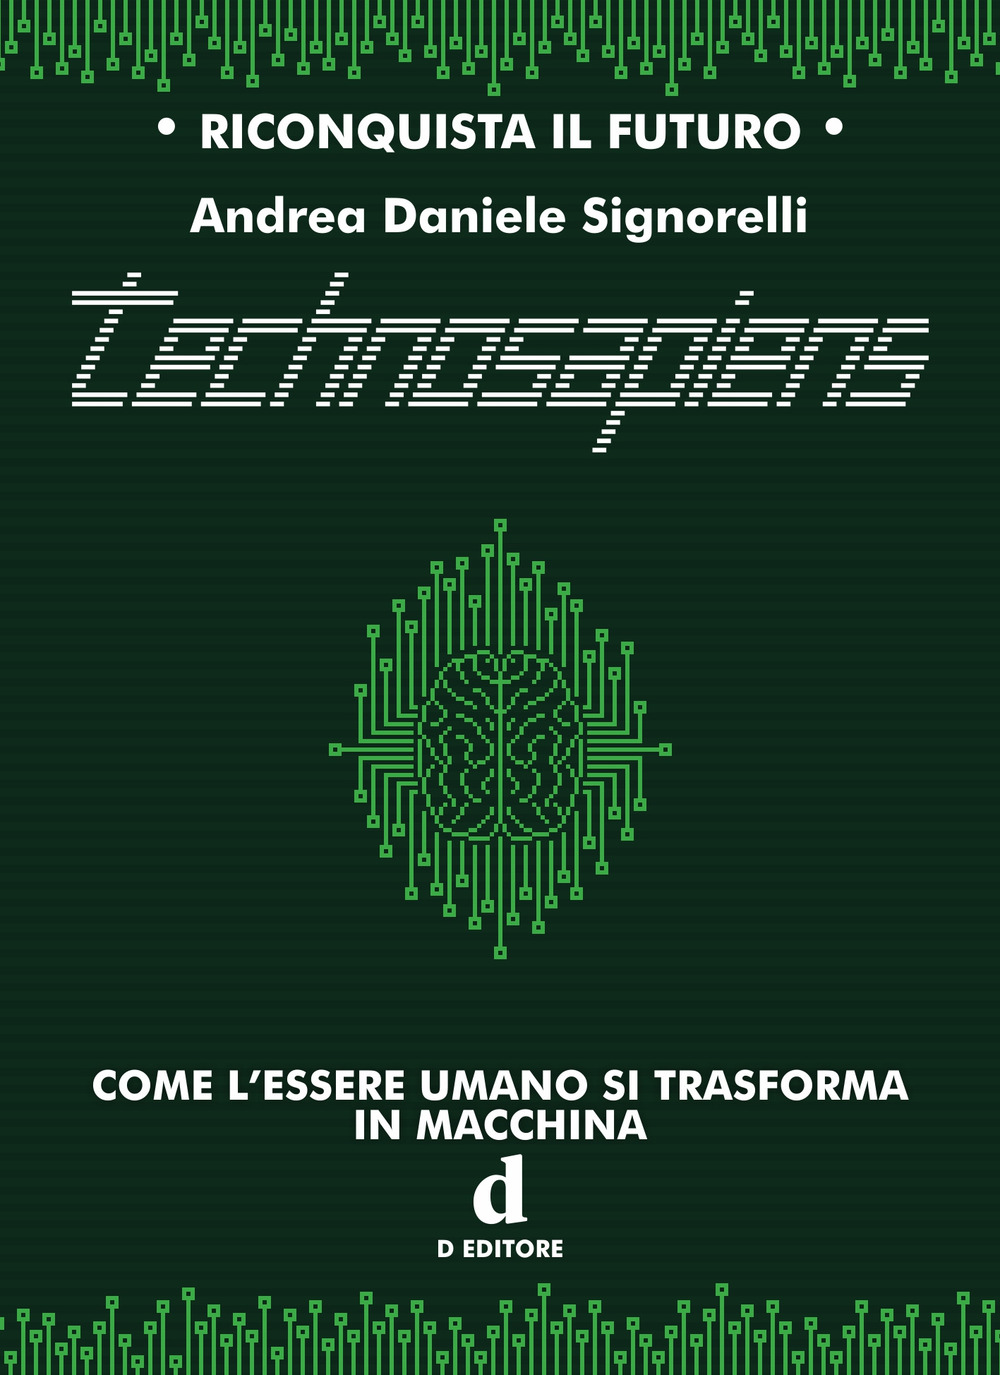 TECHNOSAPIENS. COME L’ESSERE UMANO SI TRASFORMA IN MACCHINA - Signorelli Andrea Daniele - 9788894830637